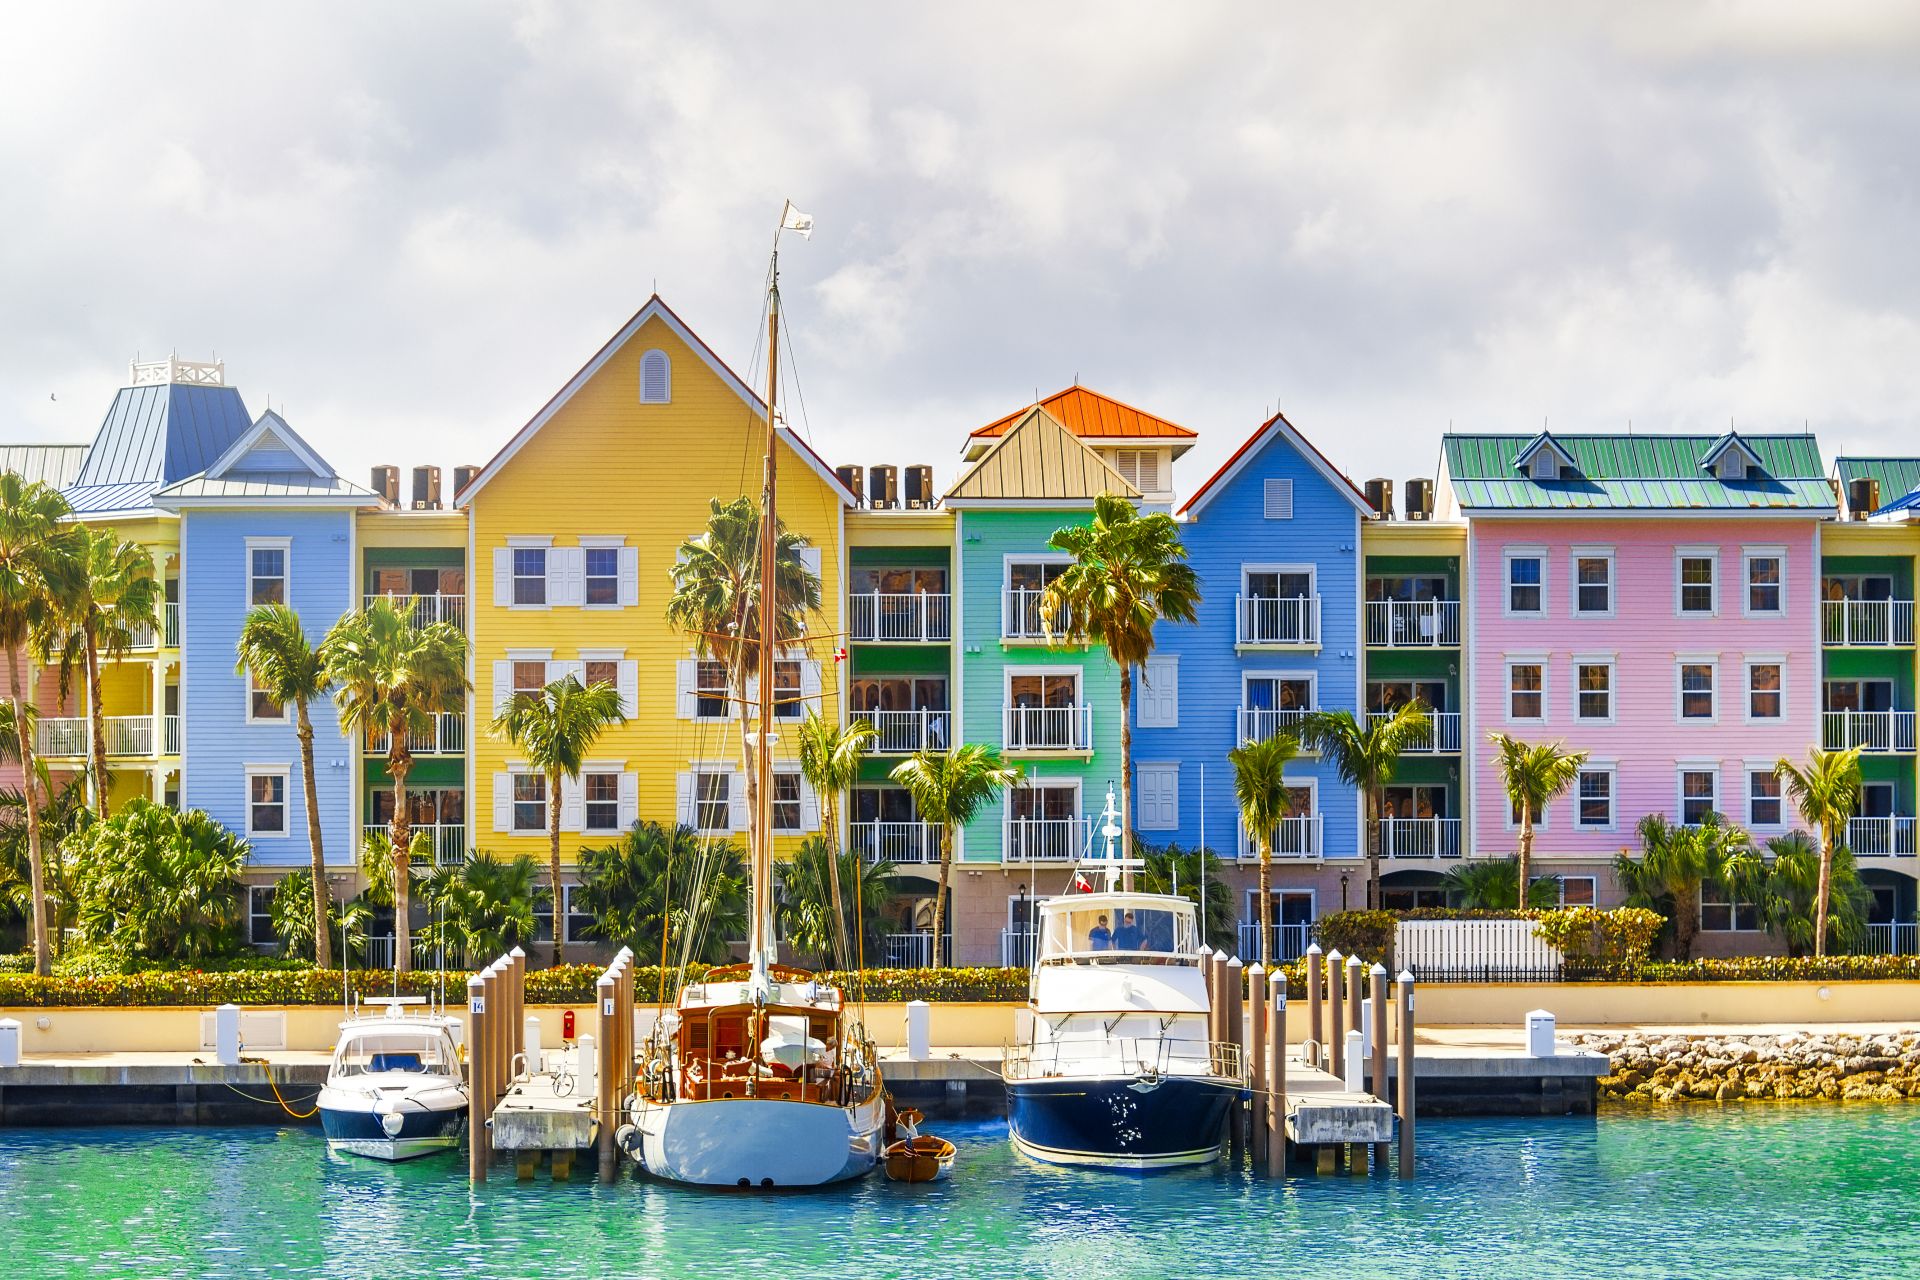 Case colorate sulla costa di Nassau, Bahamas.